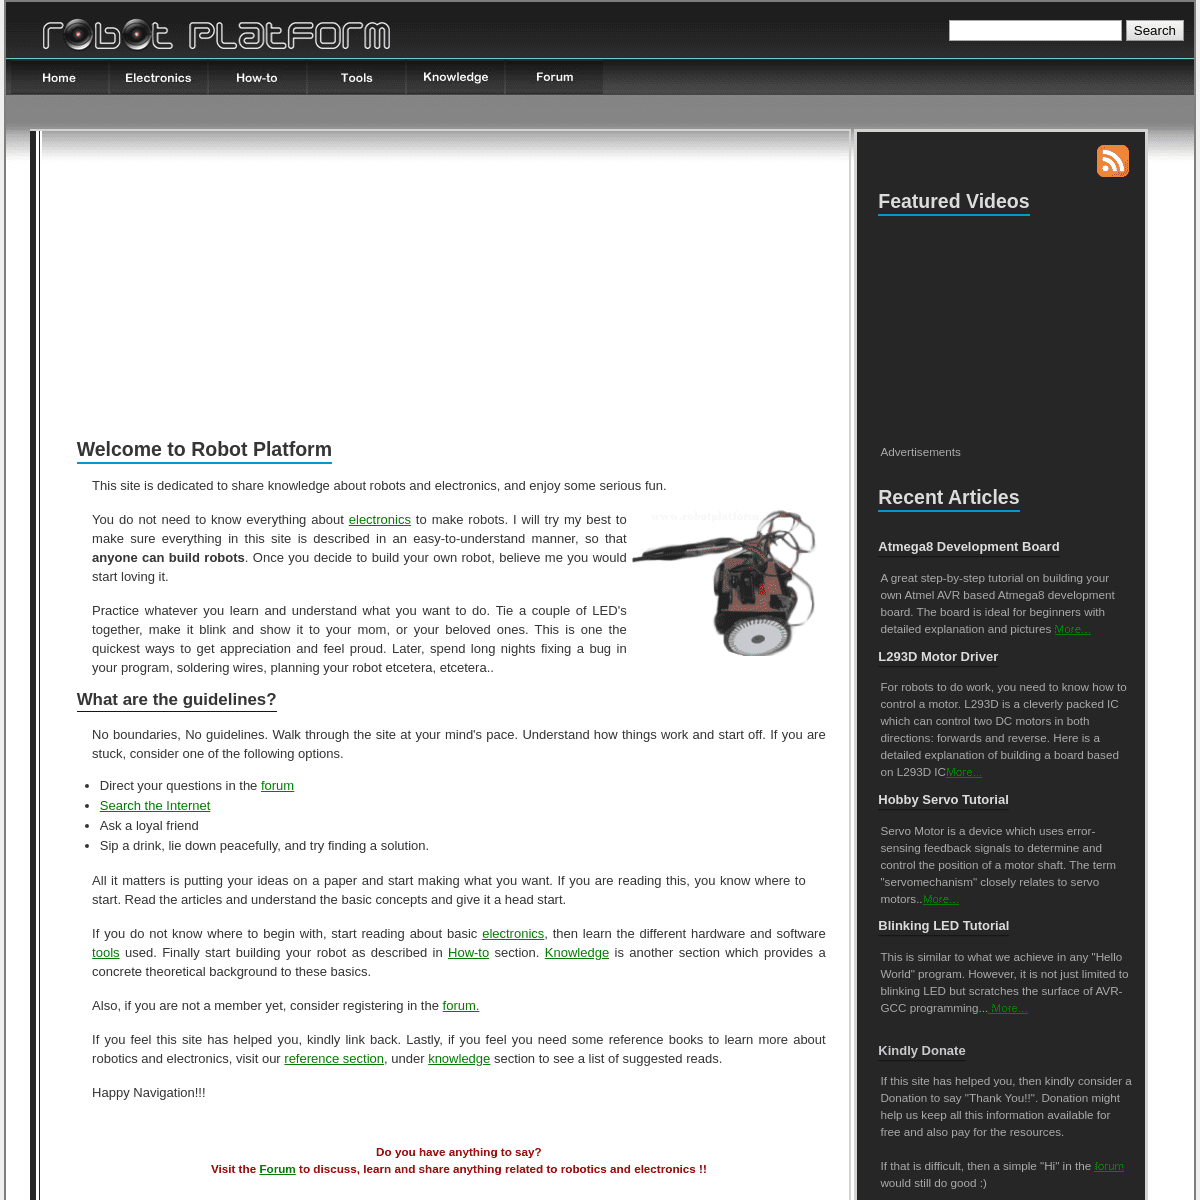 A complete backup of robotplatform.com